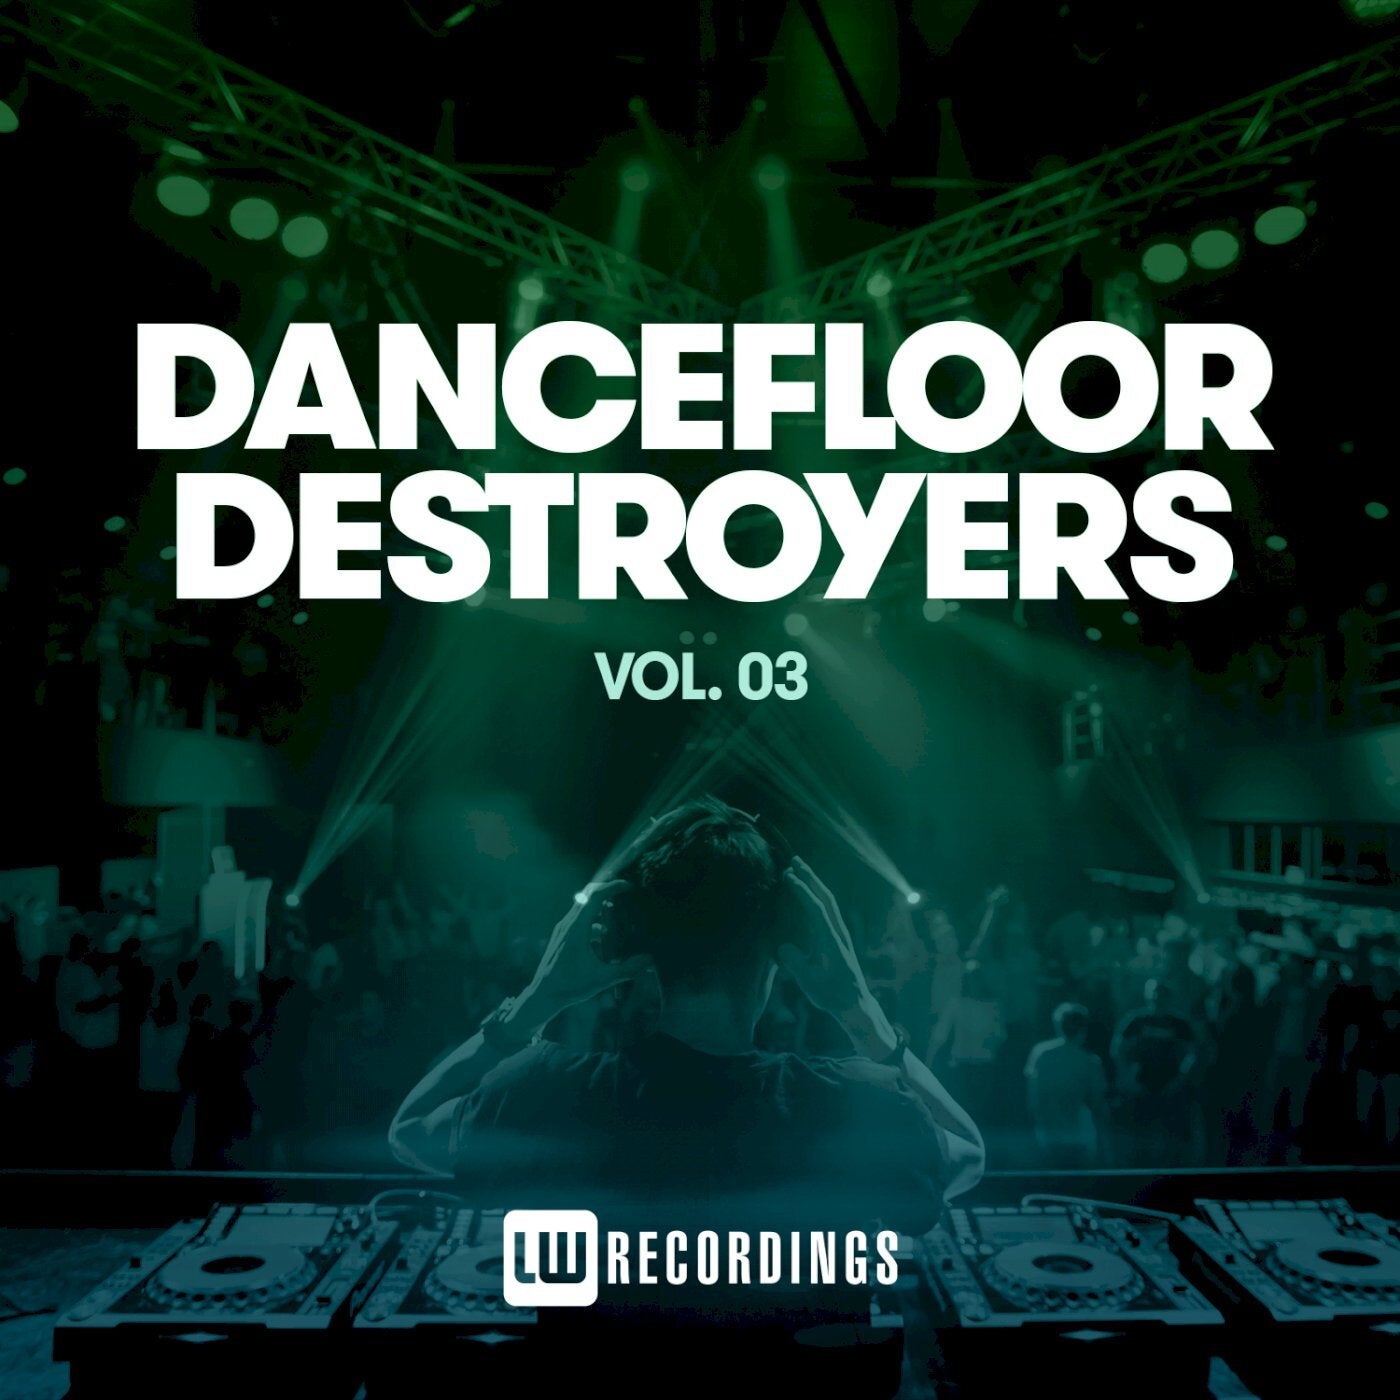 Dancefloor Destroyers, Vol. 03